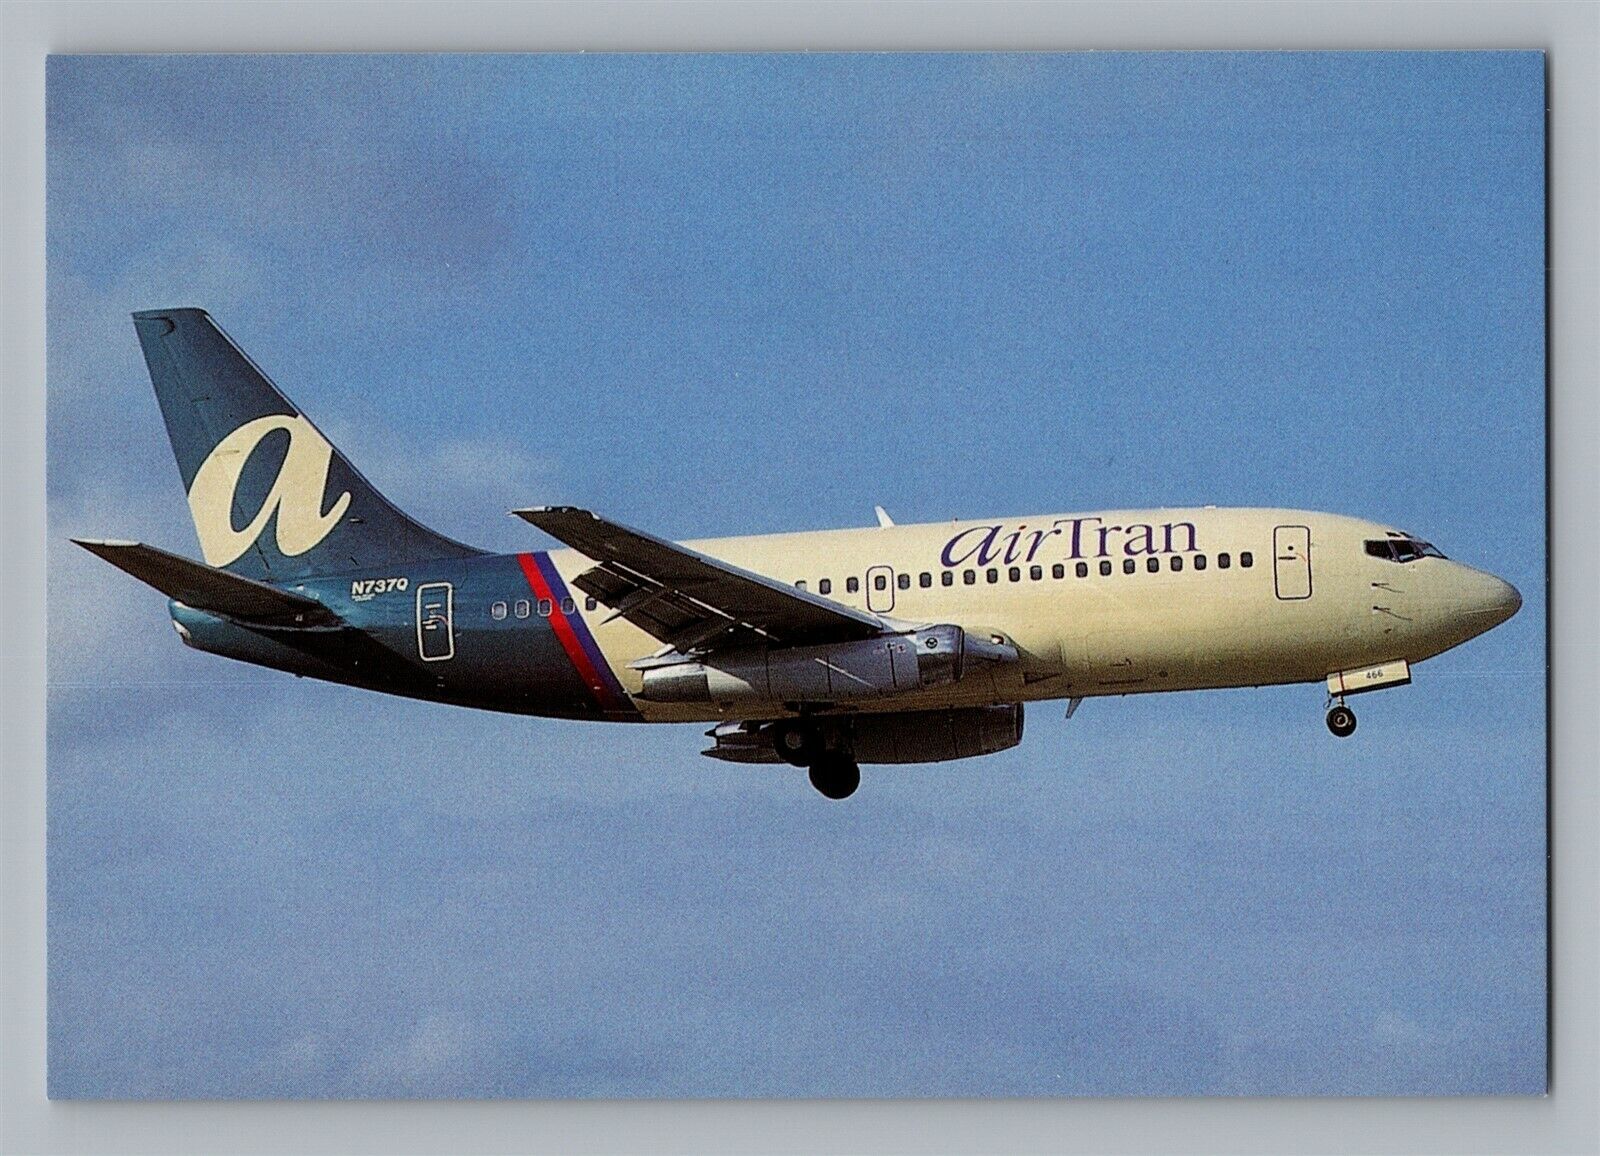 Aviation Airplane Postcard Air Tran Airline Boeing 737-2L9 N737Q in Miami T8